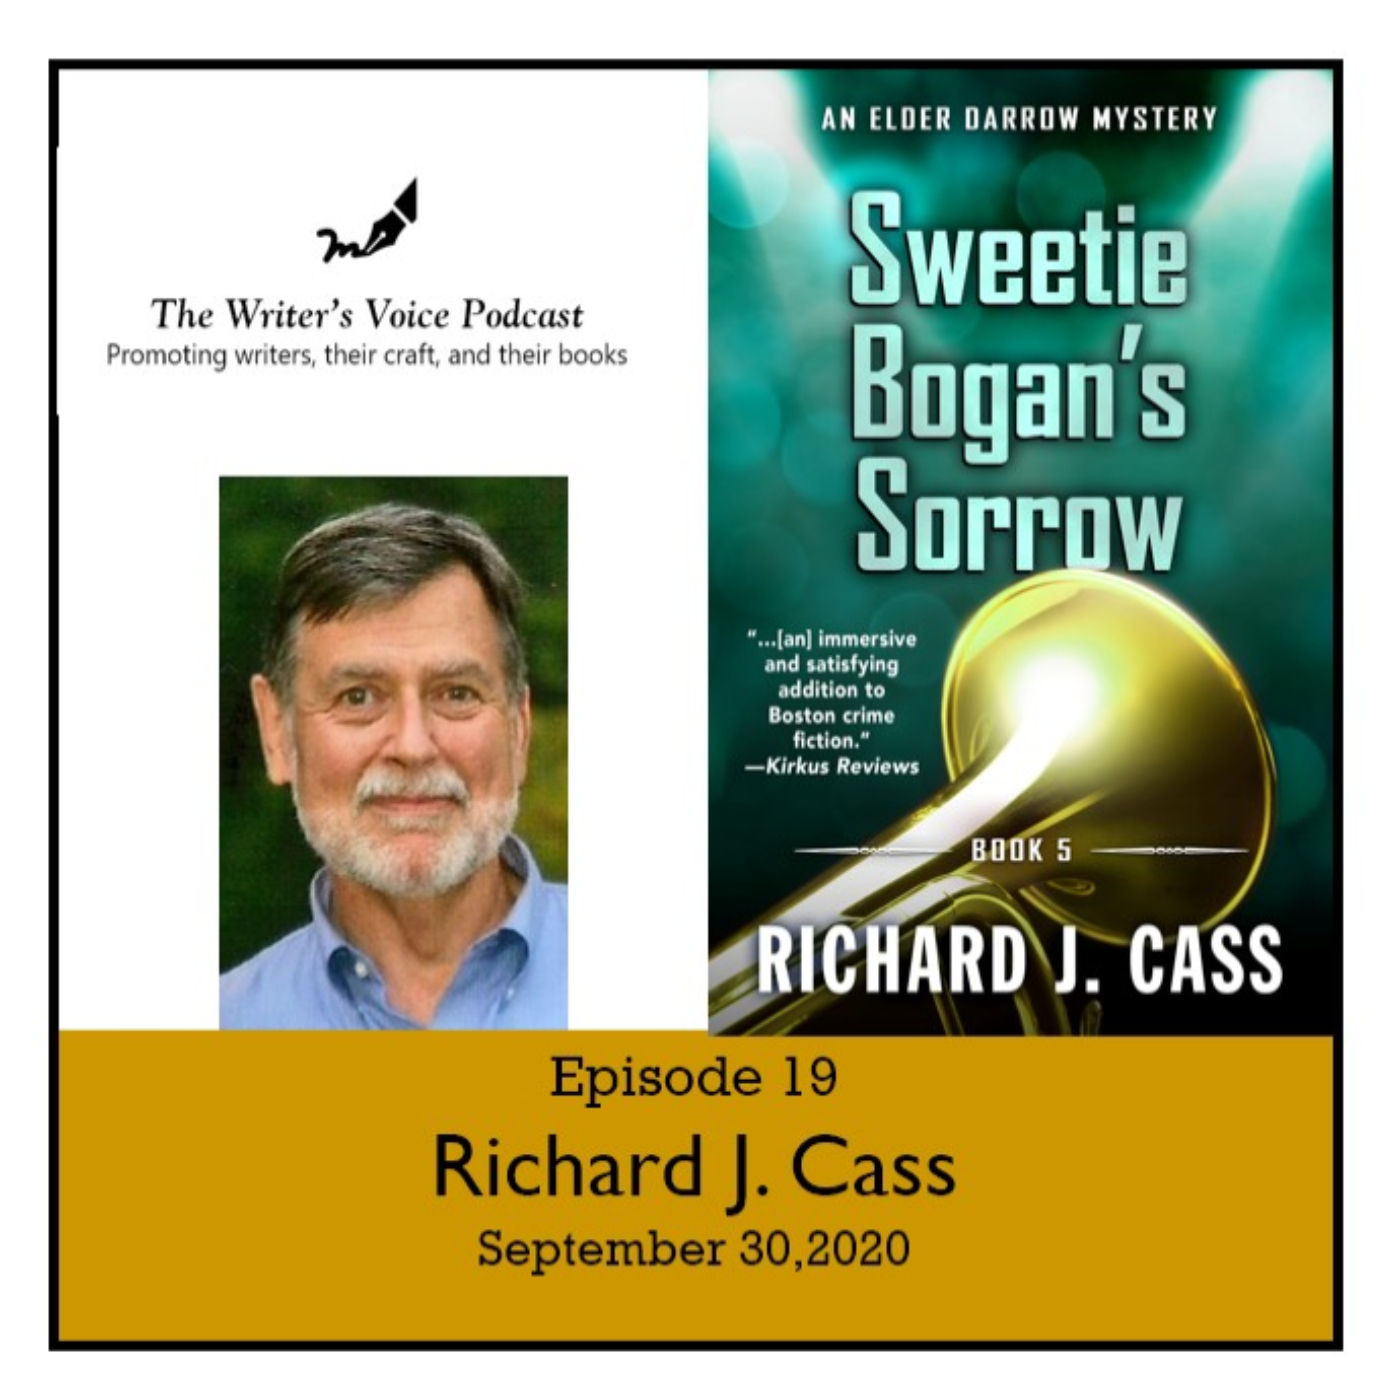 Episode 19: Richard J. Cass